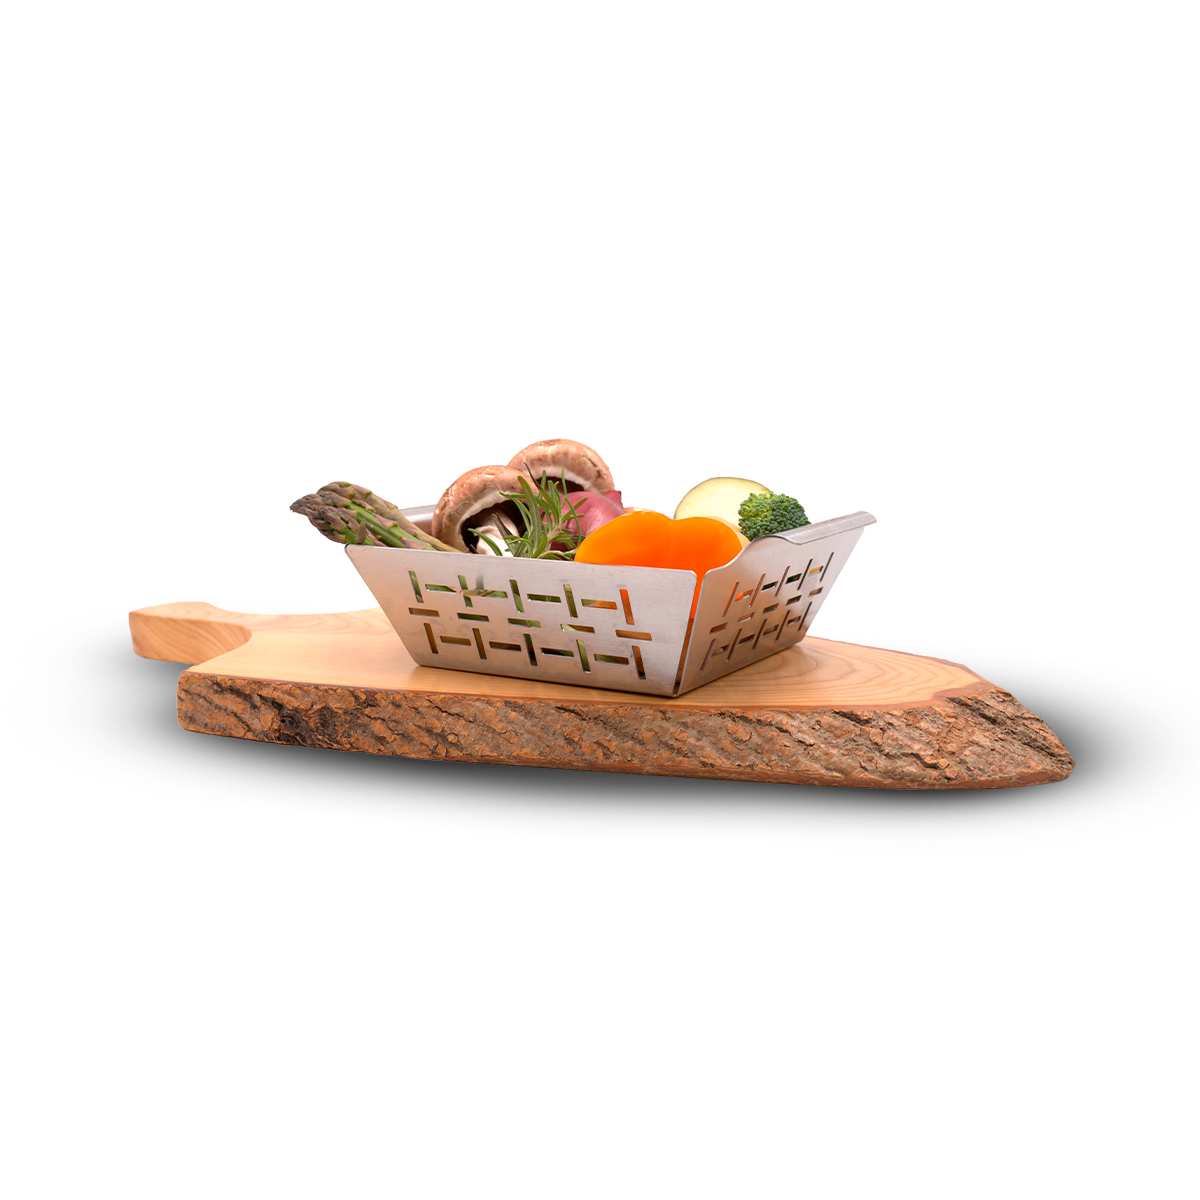 Grillkorb gefüllt mit verschiedenem Gemüse auf einem Holzbrett